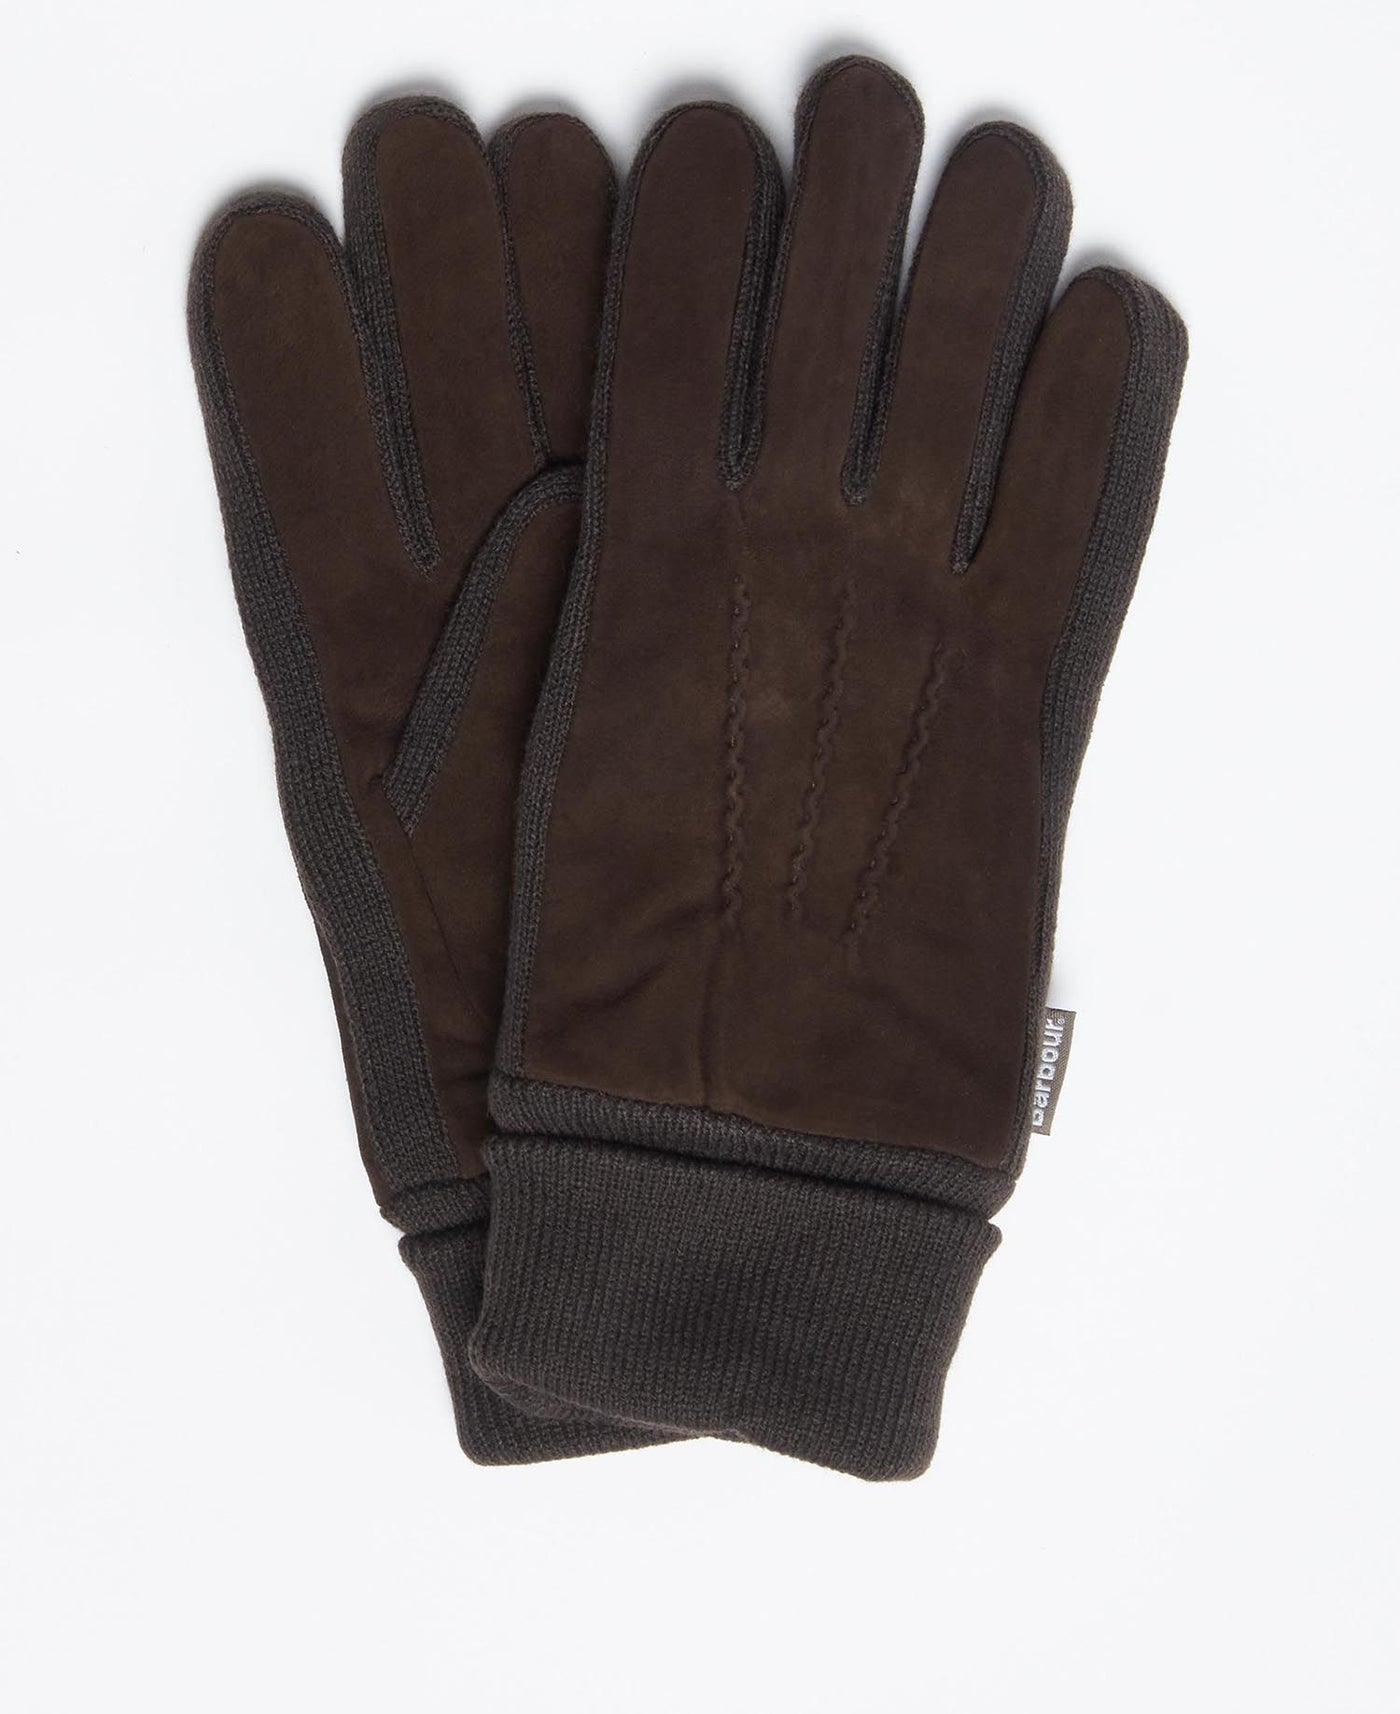 Barbour Magnus glove